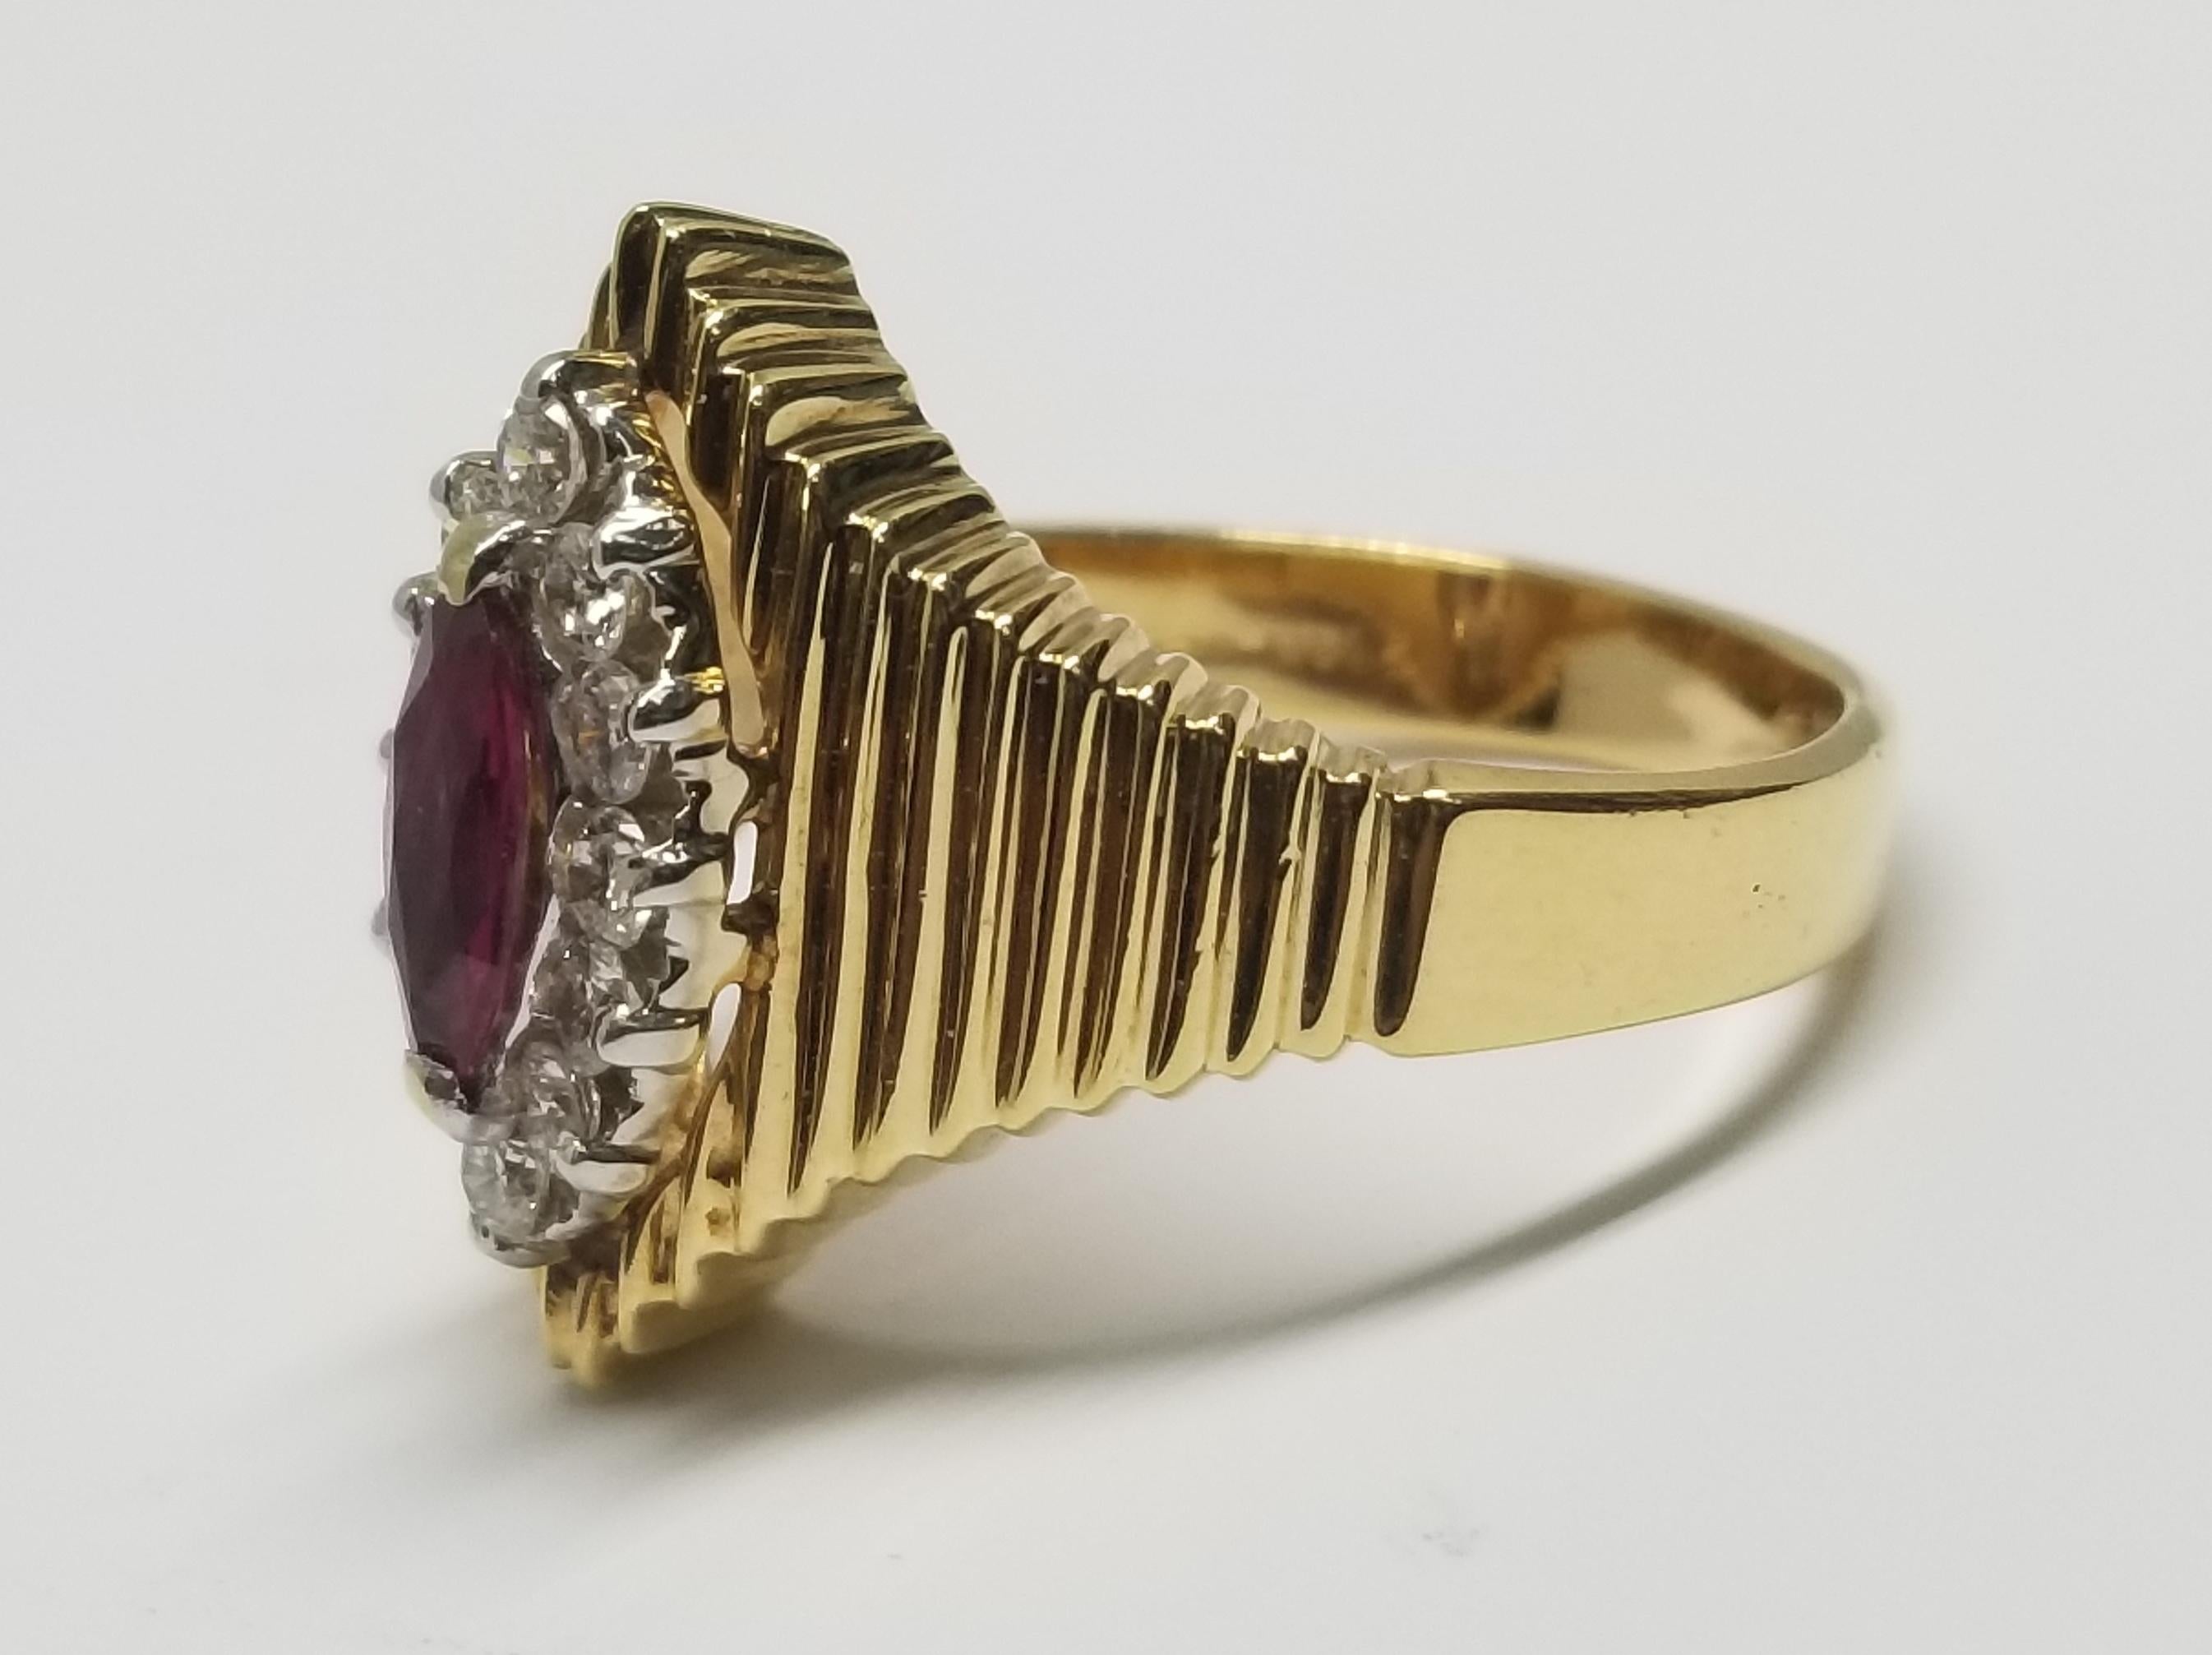 14k Gelbgold Rubin und Diamant Ring, mit 1 Marquise geschliffenen Rubin mit einem Gewicht von 0,40 pts. und 12 runde Vollschliff Diamanten von sehr feiner Qualität mit einem Gewicht von 0,40 pts. auf einem gerippten Band.  Dieser Ring ist eine Größe